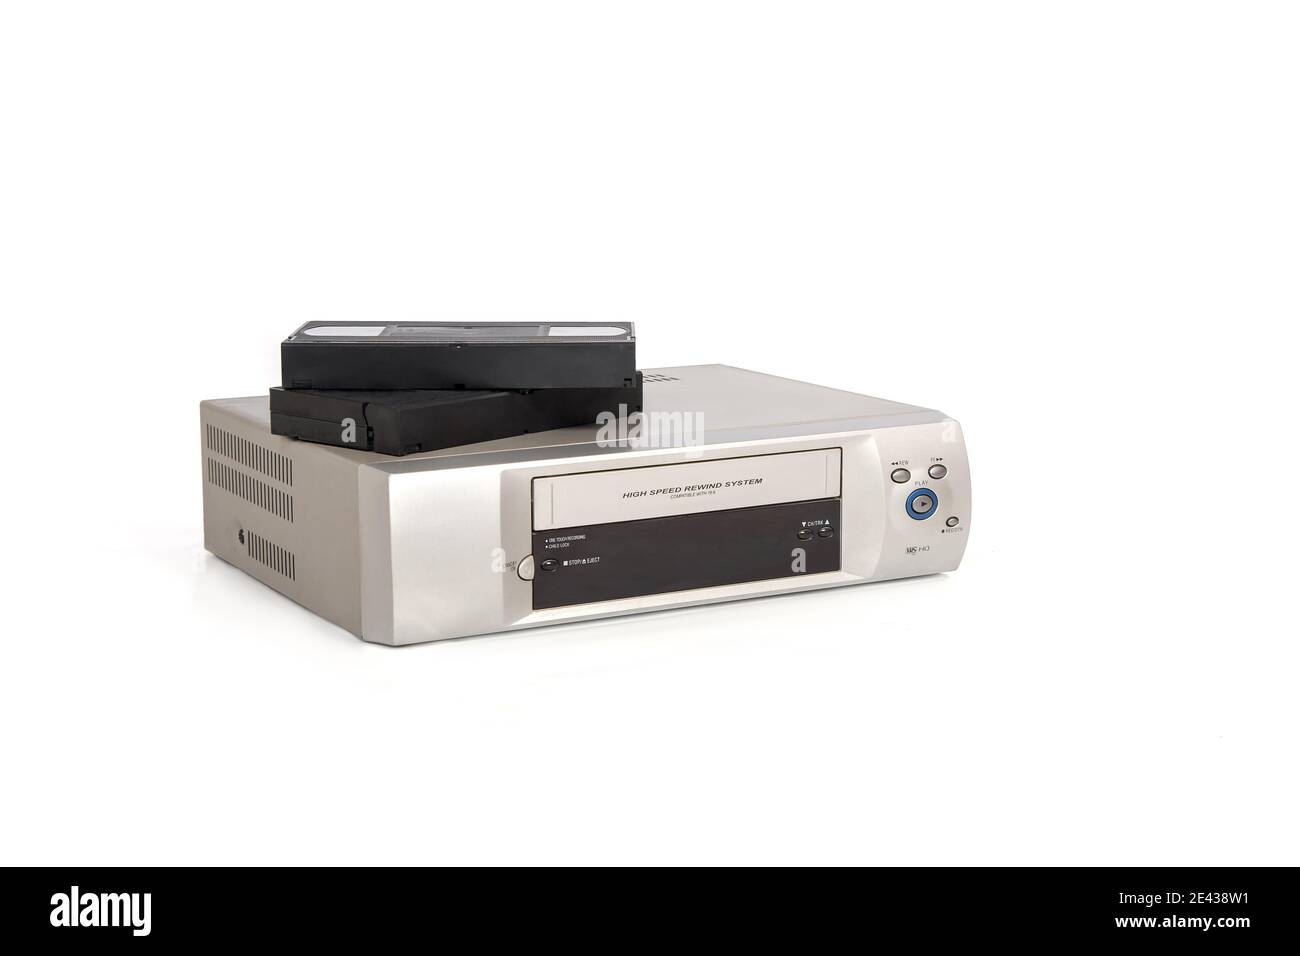 Lettore video color argento con videocassette sulla parte superiore. Foto Stock